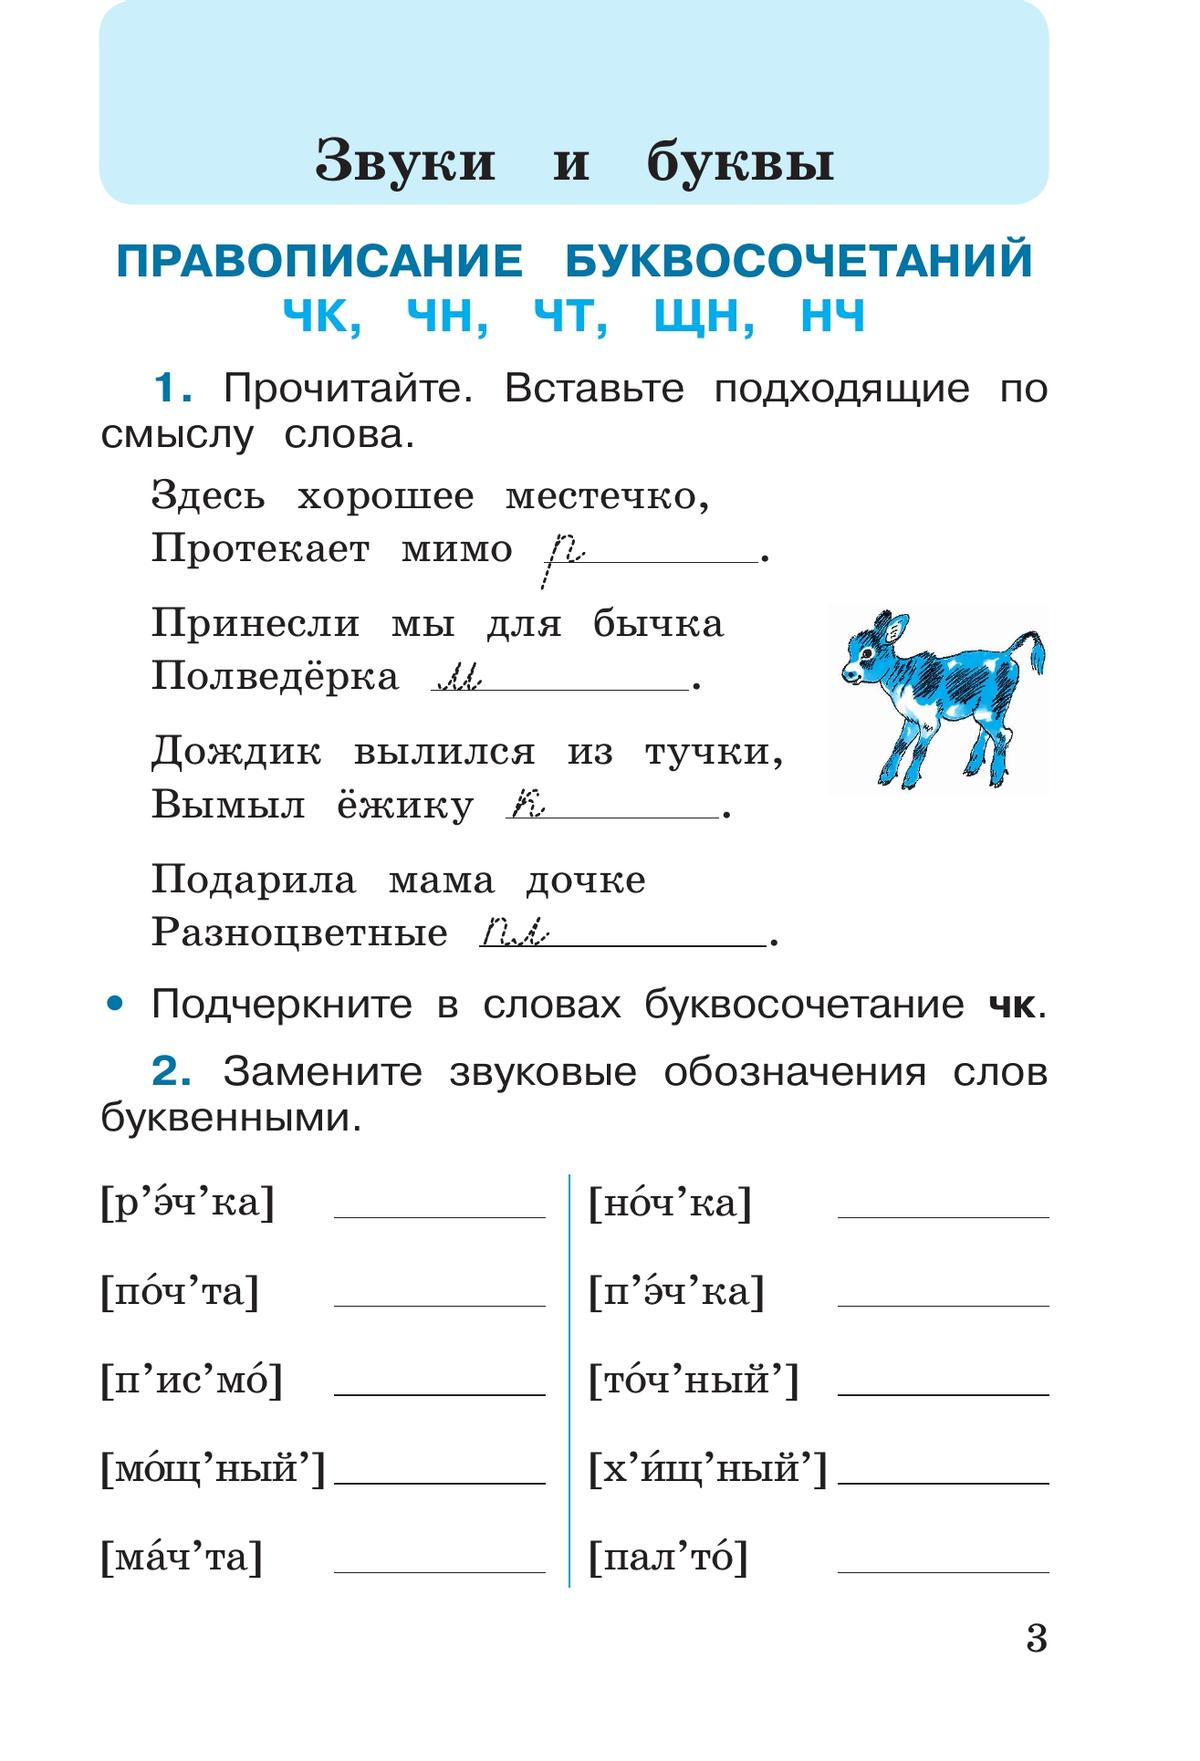 Русский язык. Рабочая тетрадь. 2 класс. В 2 частях. Часть 2 4